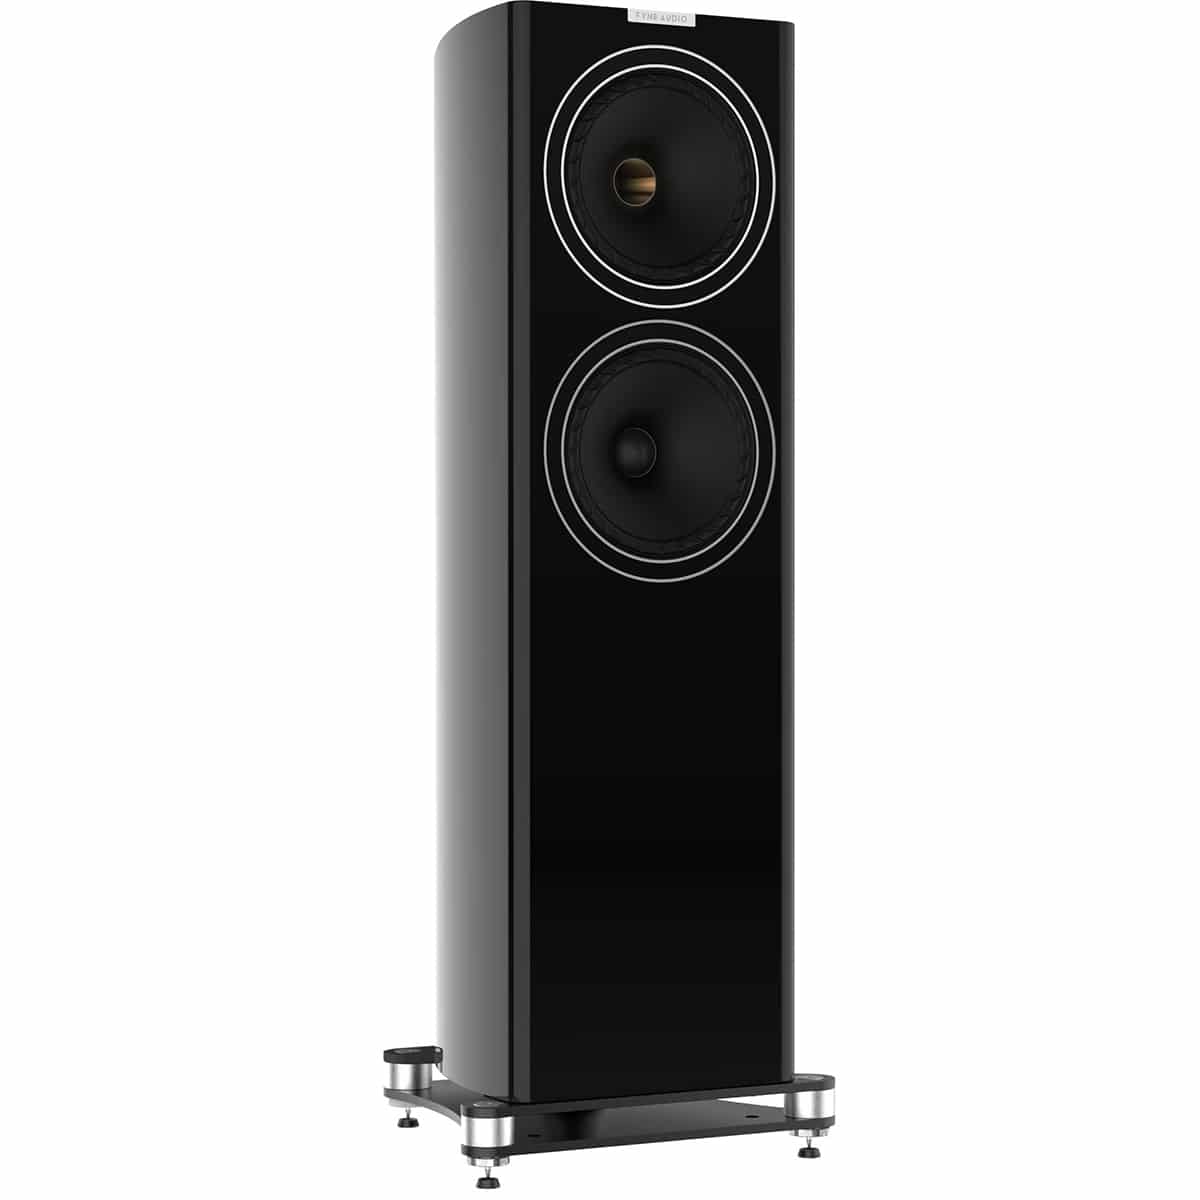 F703 Floorstanding Speakers By Fyne Audio